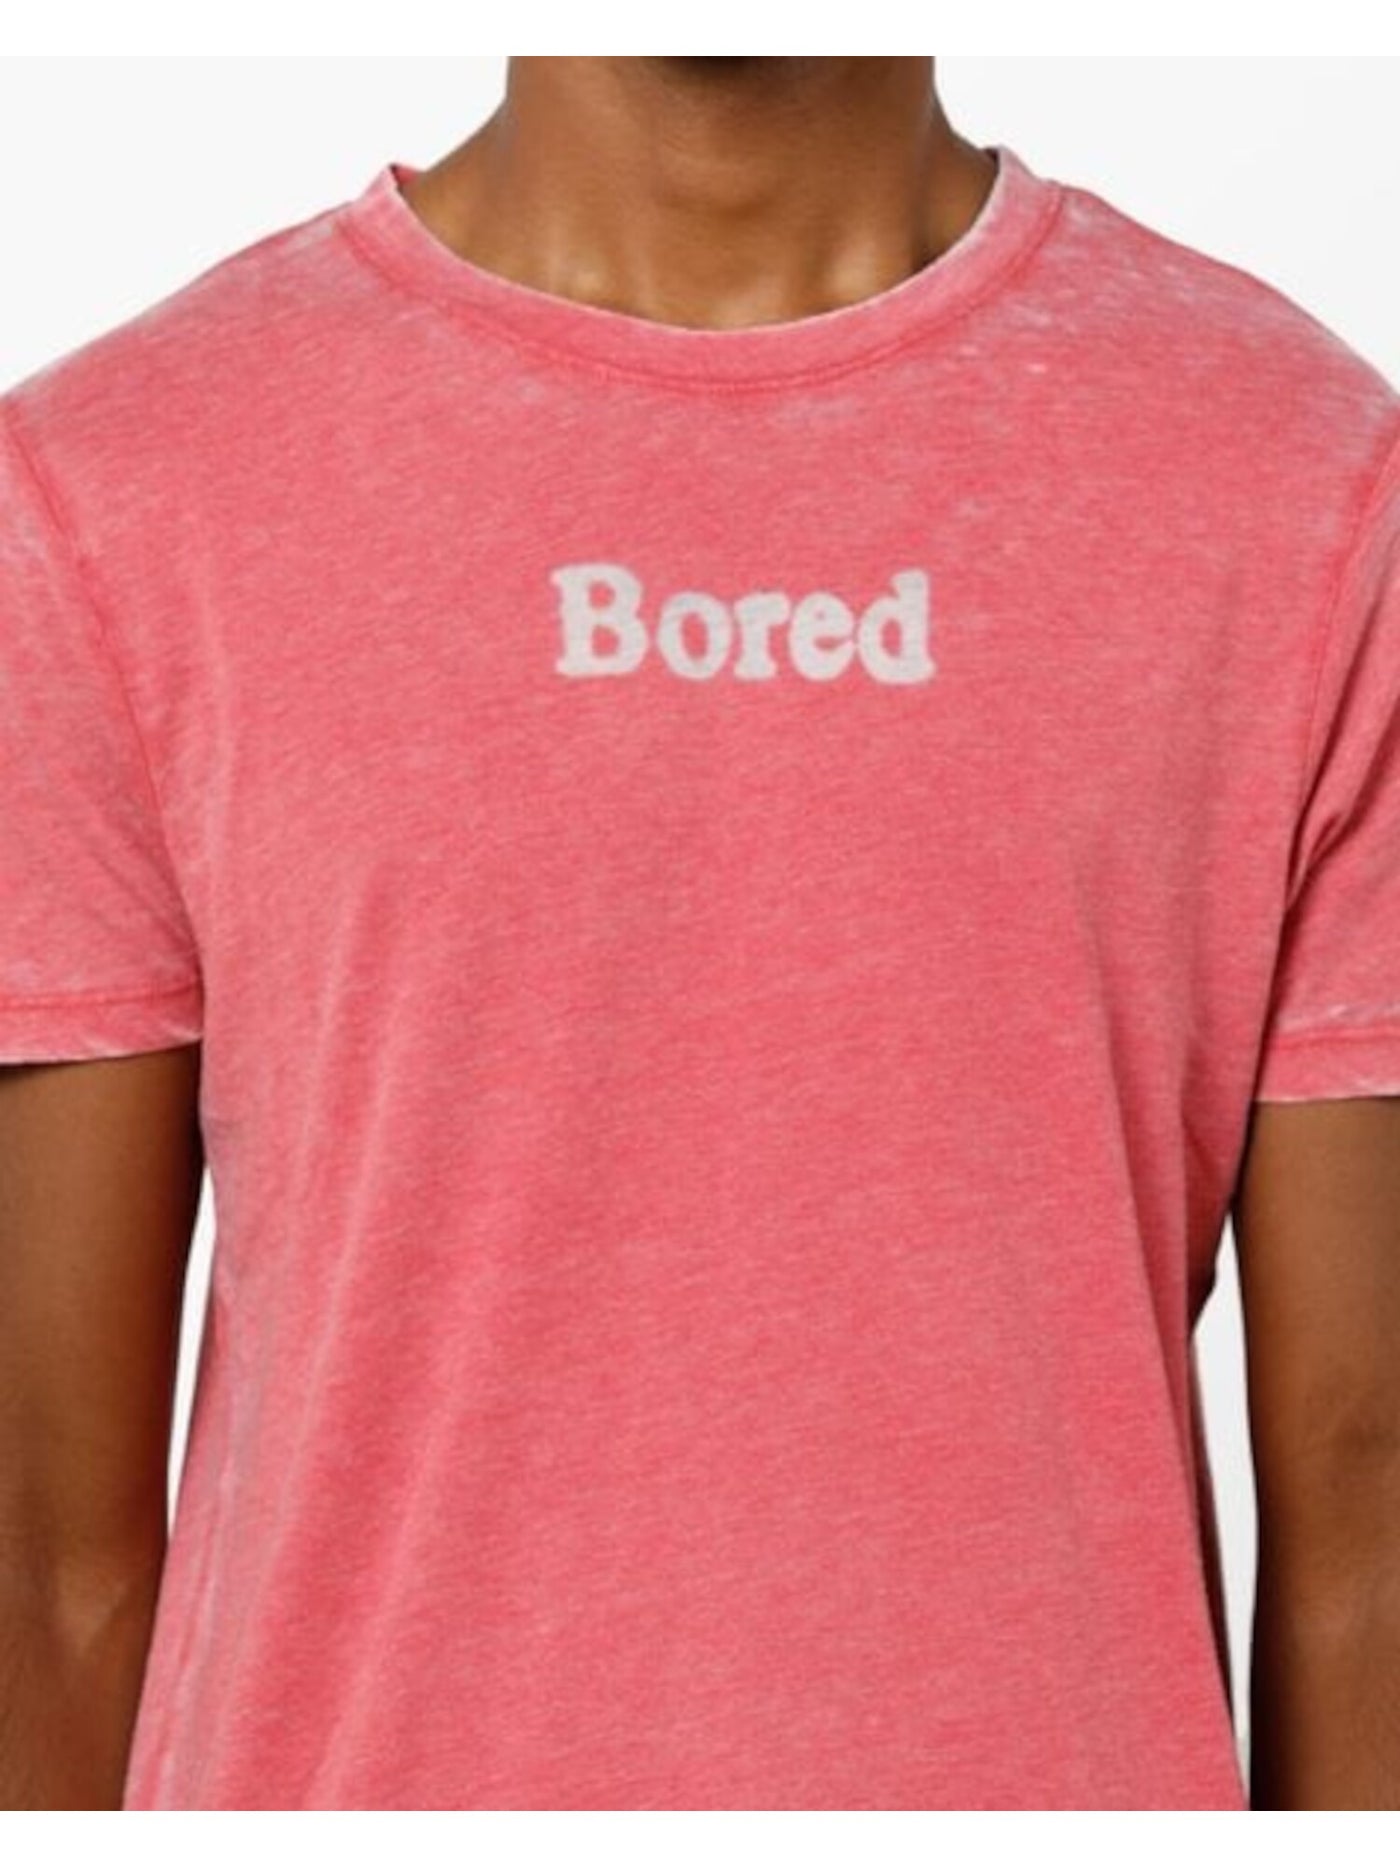 Jack&Jones Mens Red Lightweight, Logo Graphic Short Sleeve Cotton Blend Classic T-Shirt